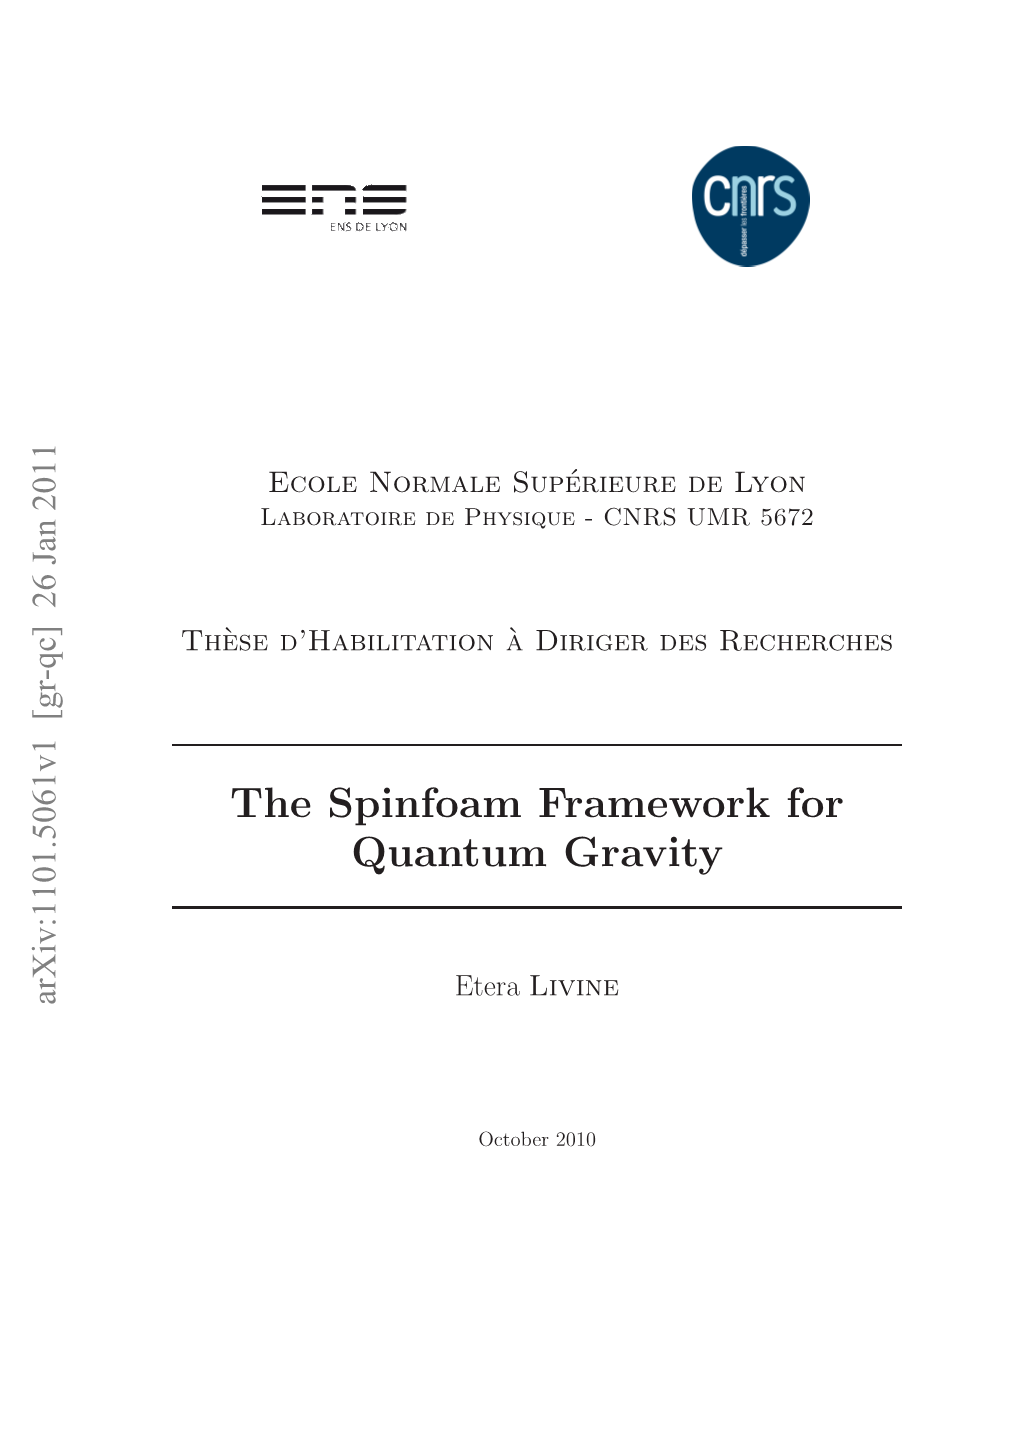 The Spinfoam Framework for Quantum Gravity